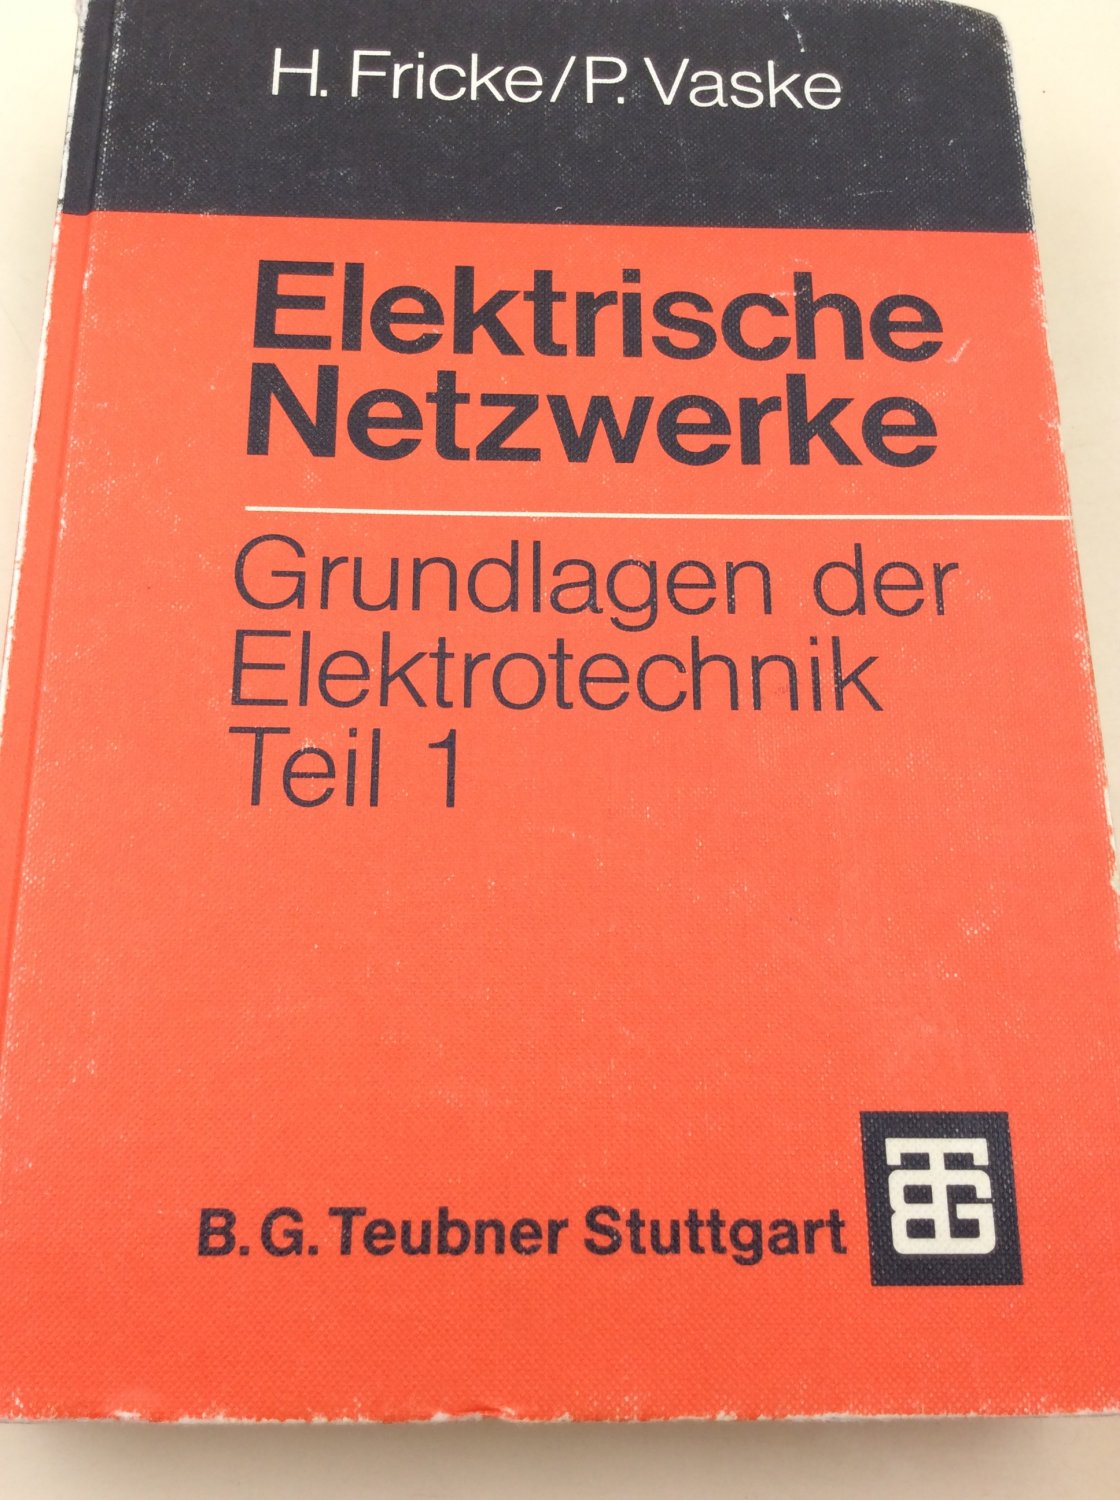 Elektrische Netzwerke: Grundlagen der Elektrotechnik Teil 1 (Leitfaden der Elektrotechnik) - Fricke, Hans und Paul Vaske